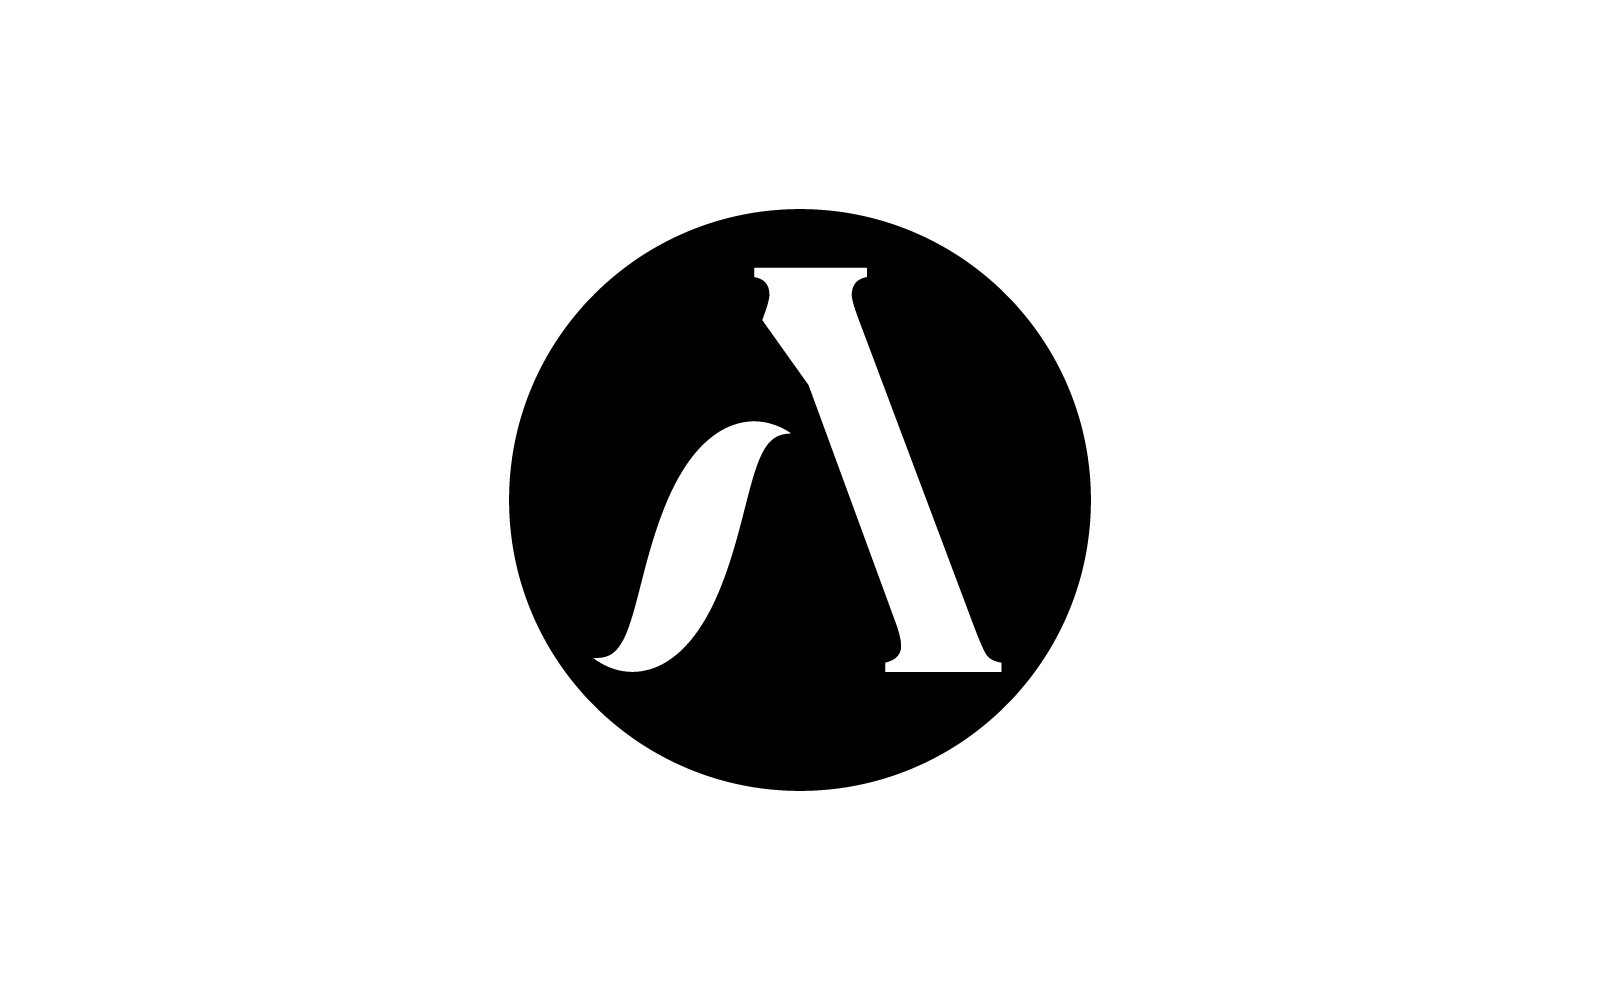 Szablon logo ilustracji początkowej litery